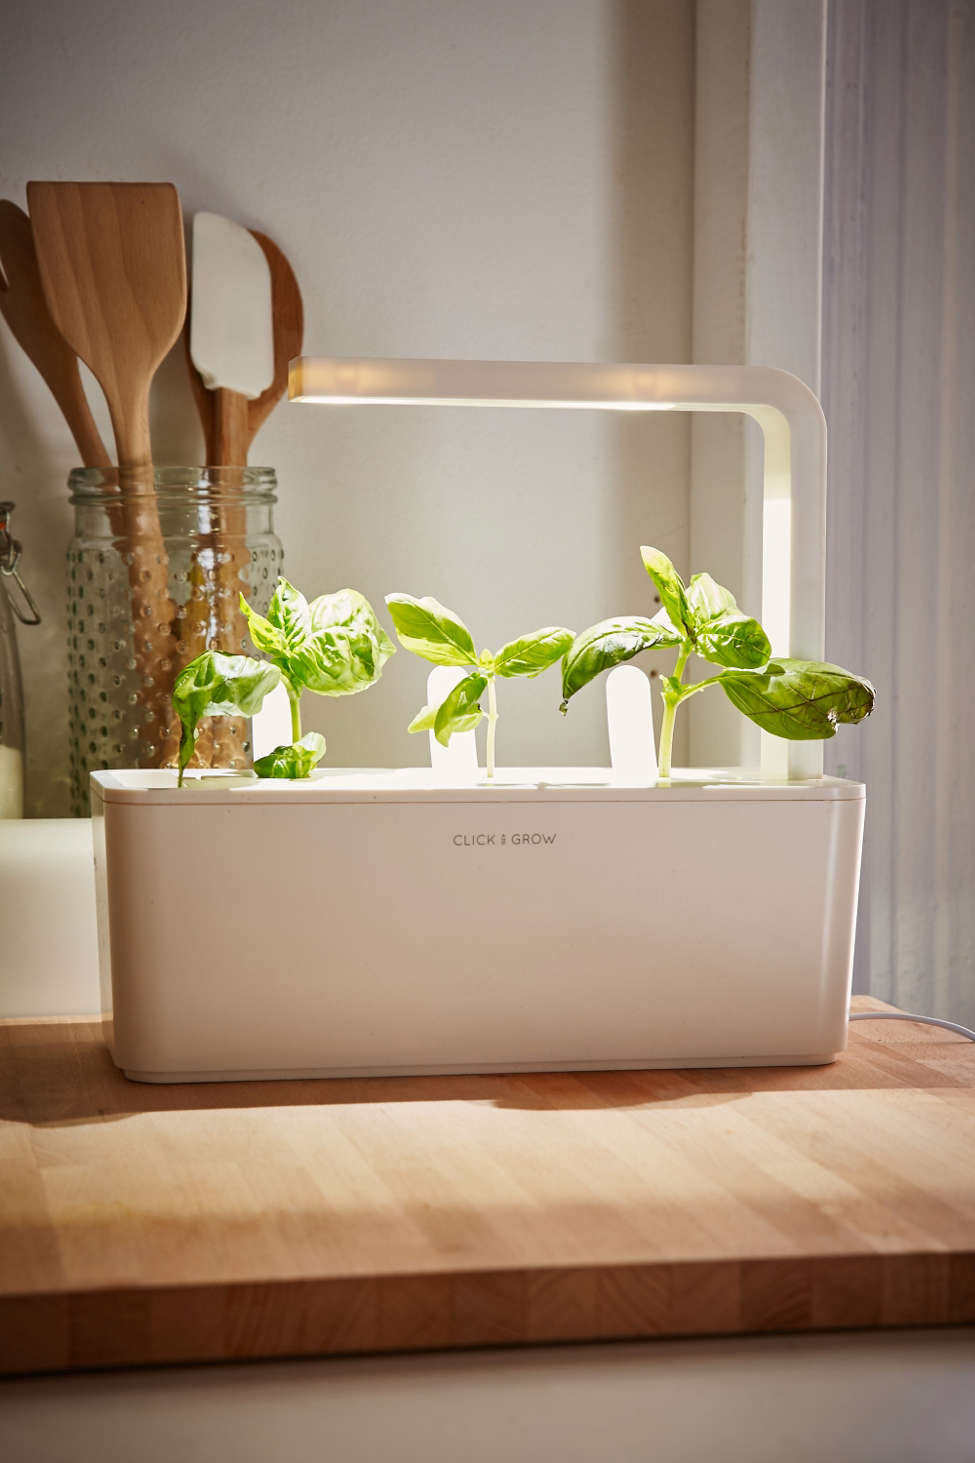 Click & Grow smart herb garden starter kit